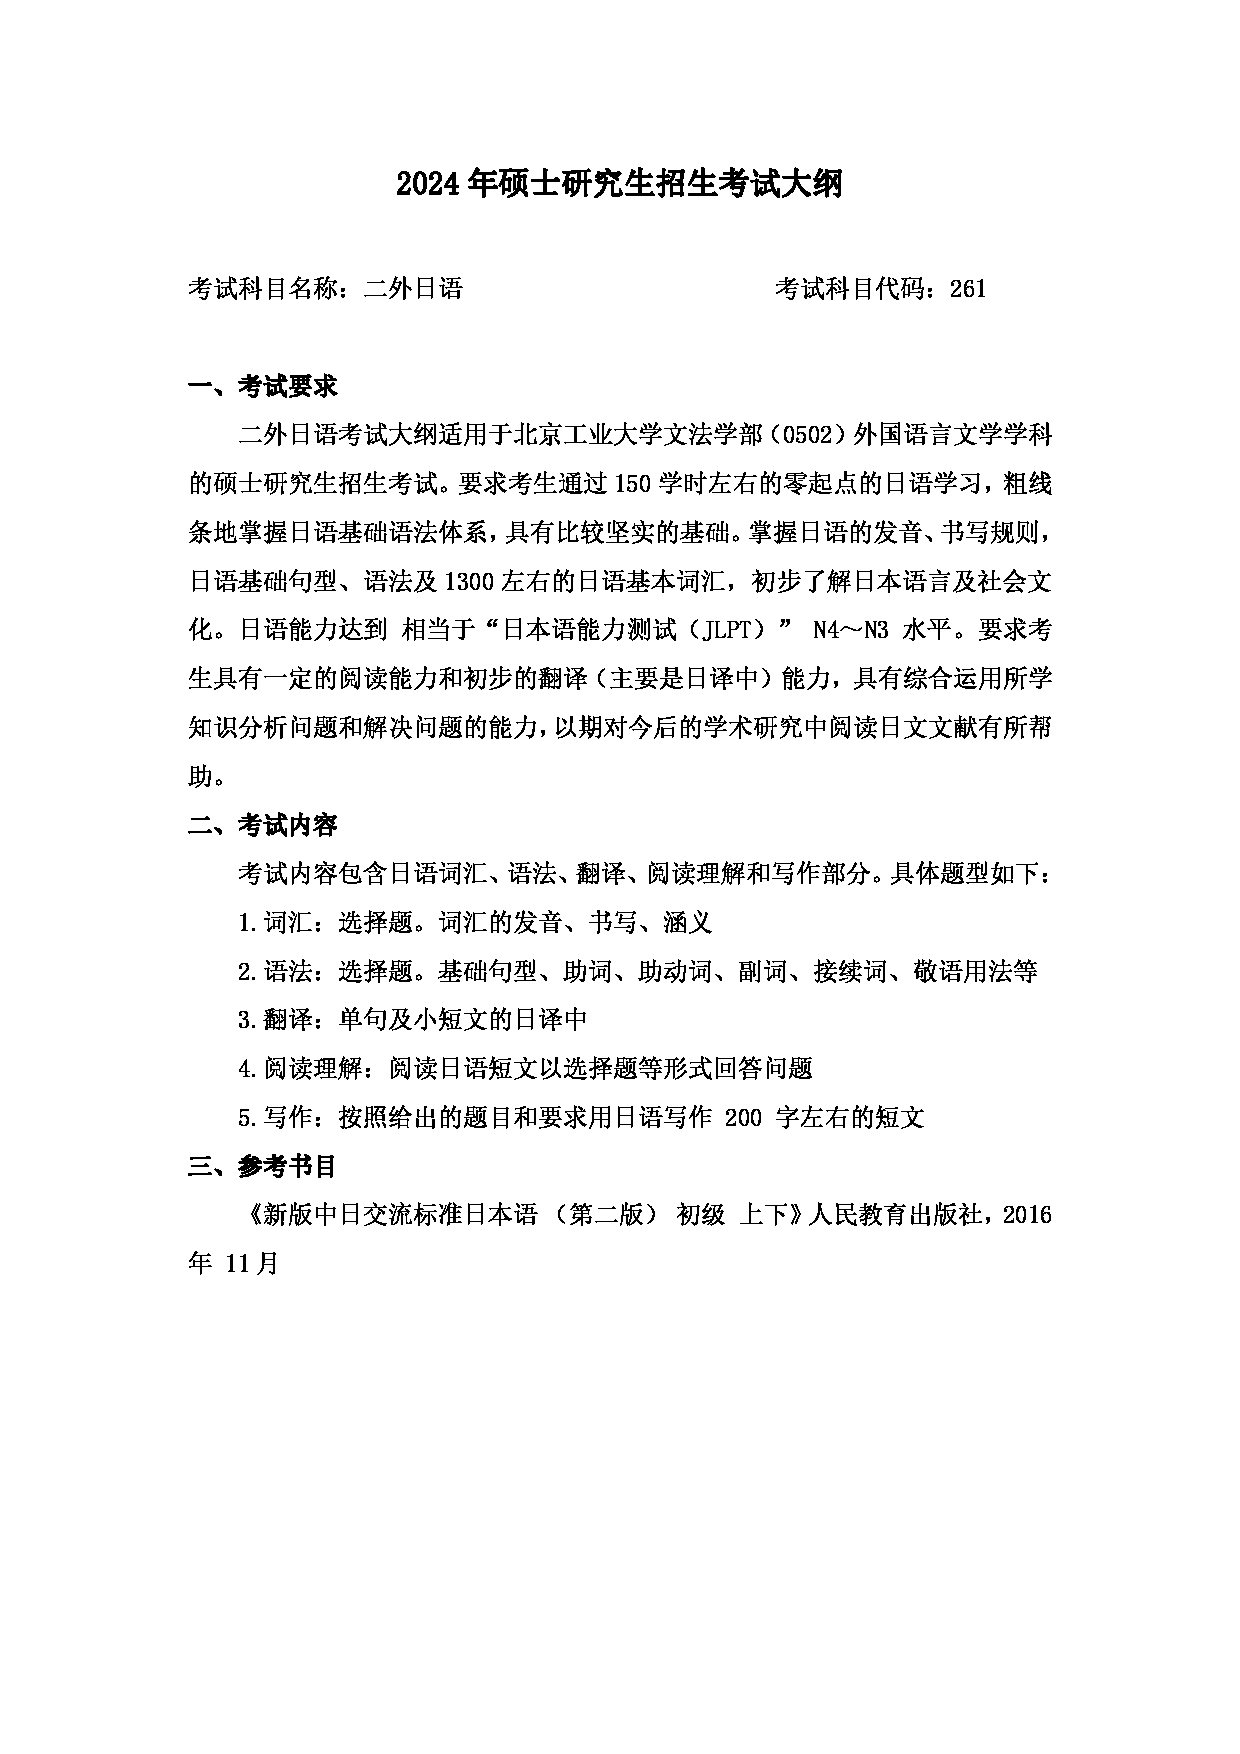 2024考研大纲：北京工业大学2024年考研自命题科目 261 二外日语 考试大纲第1页